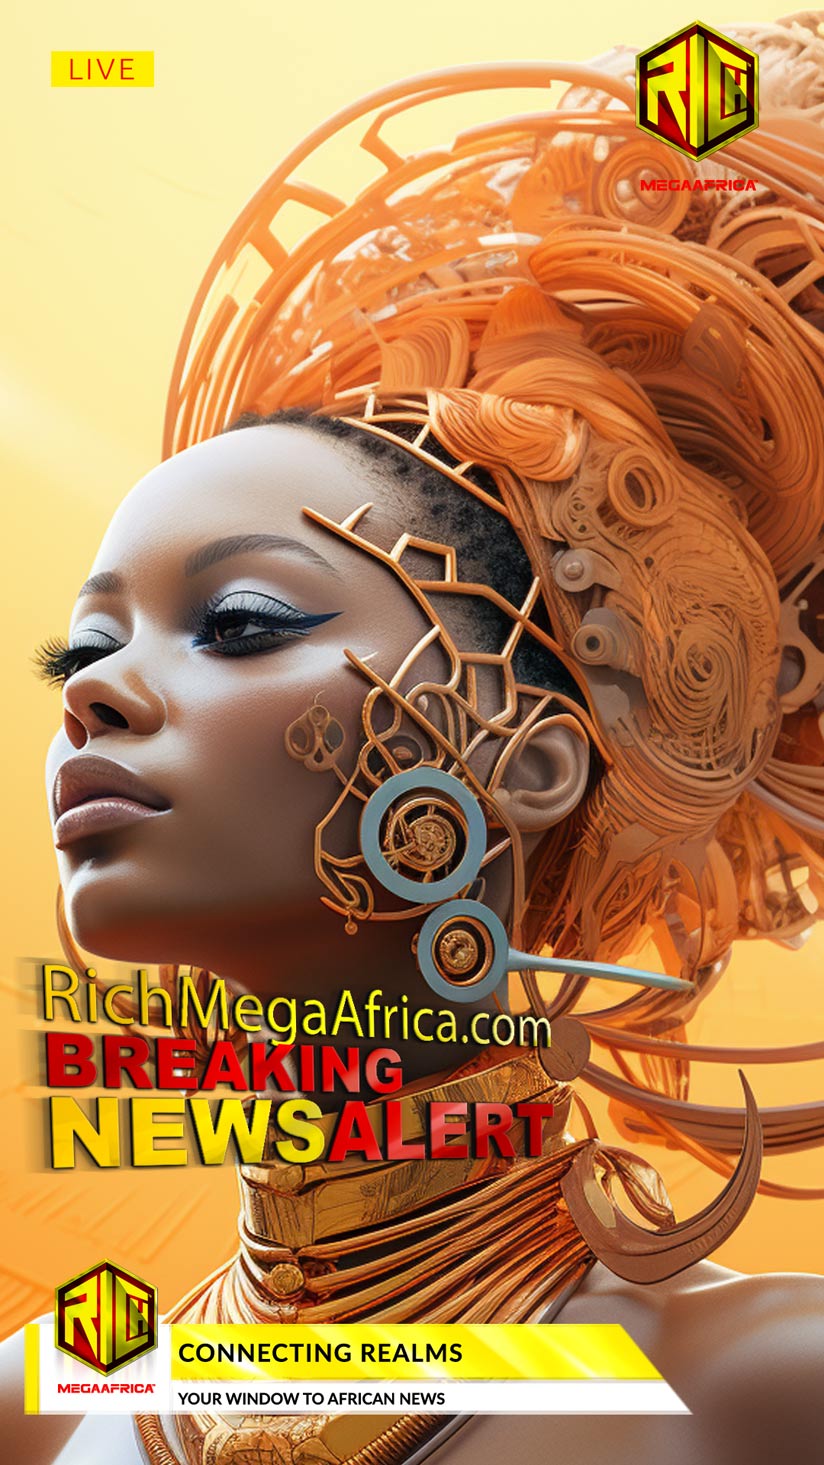 African News